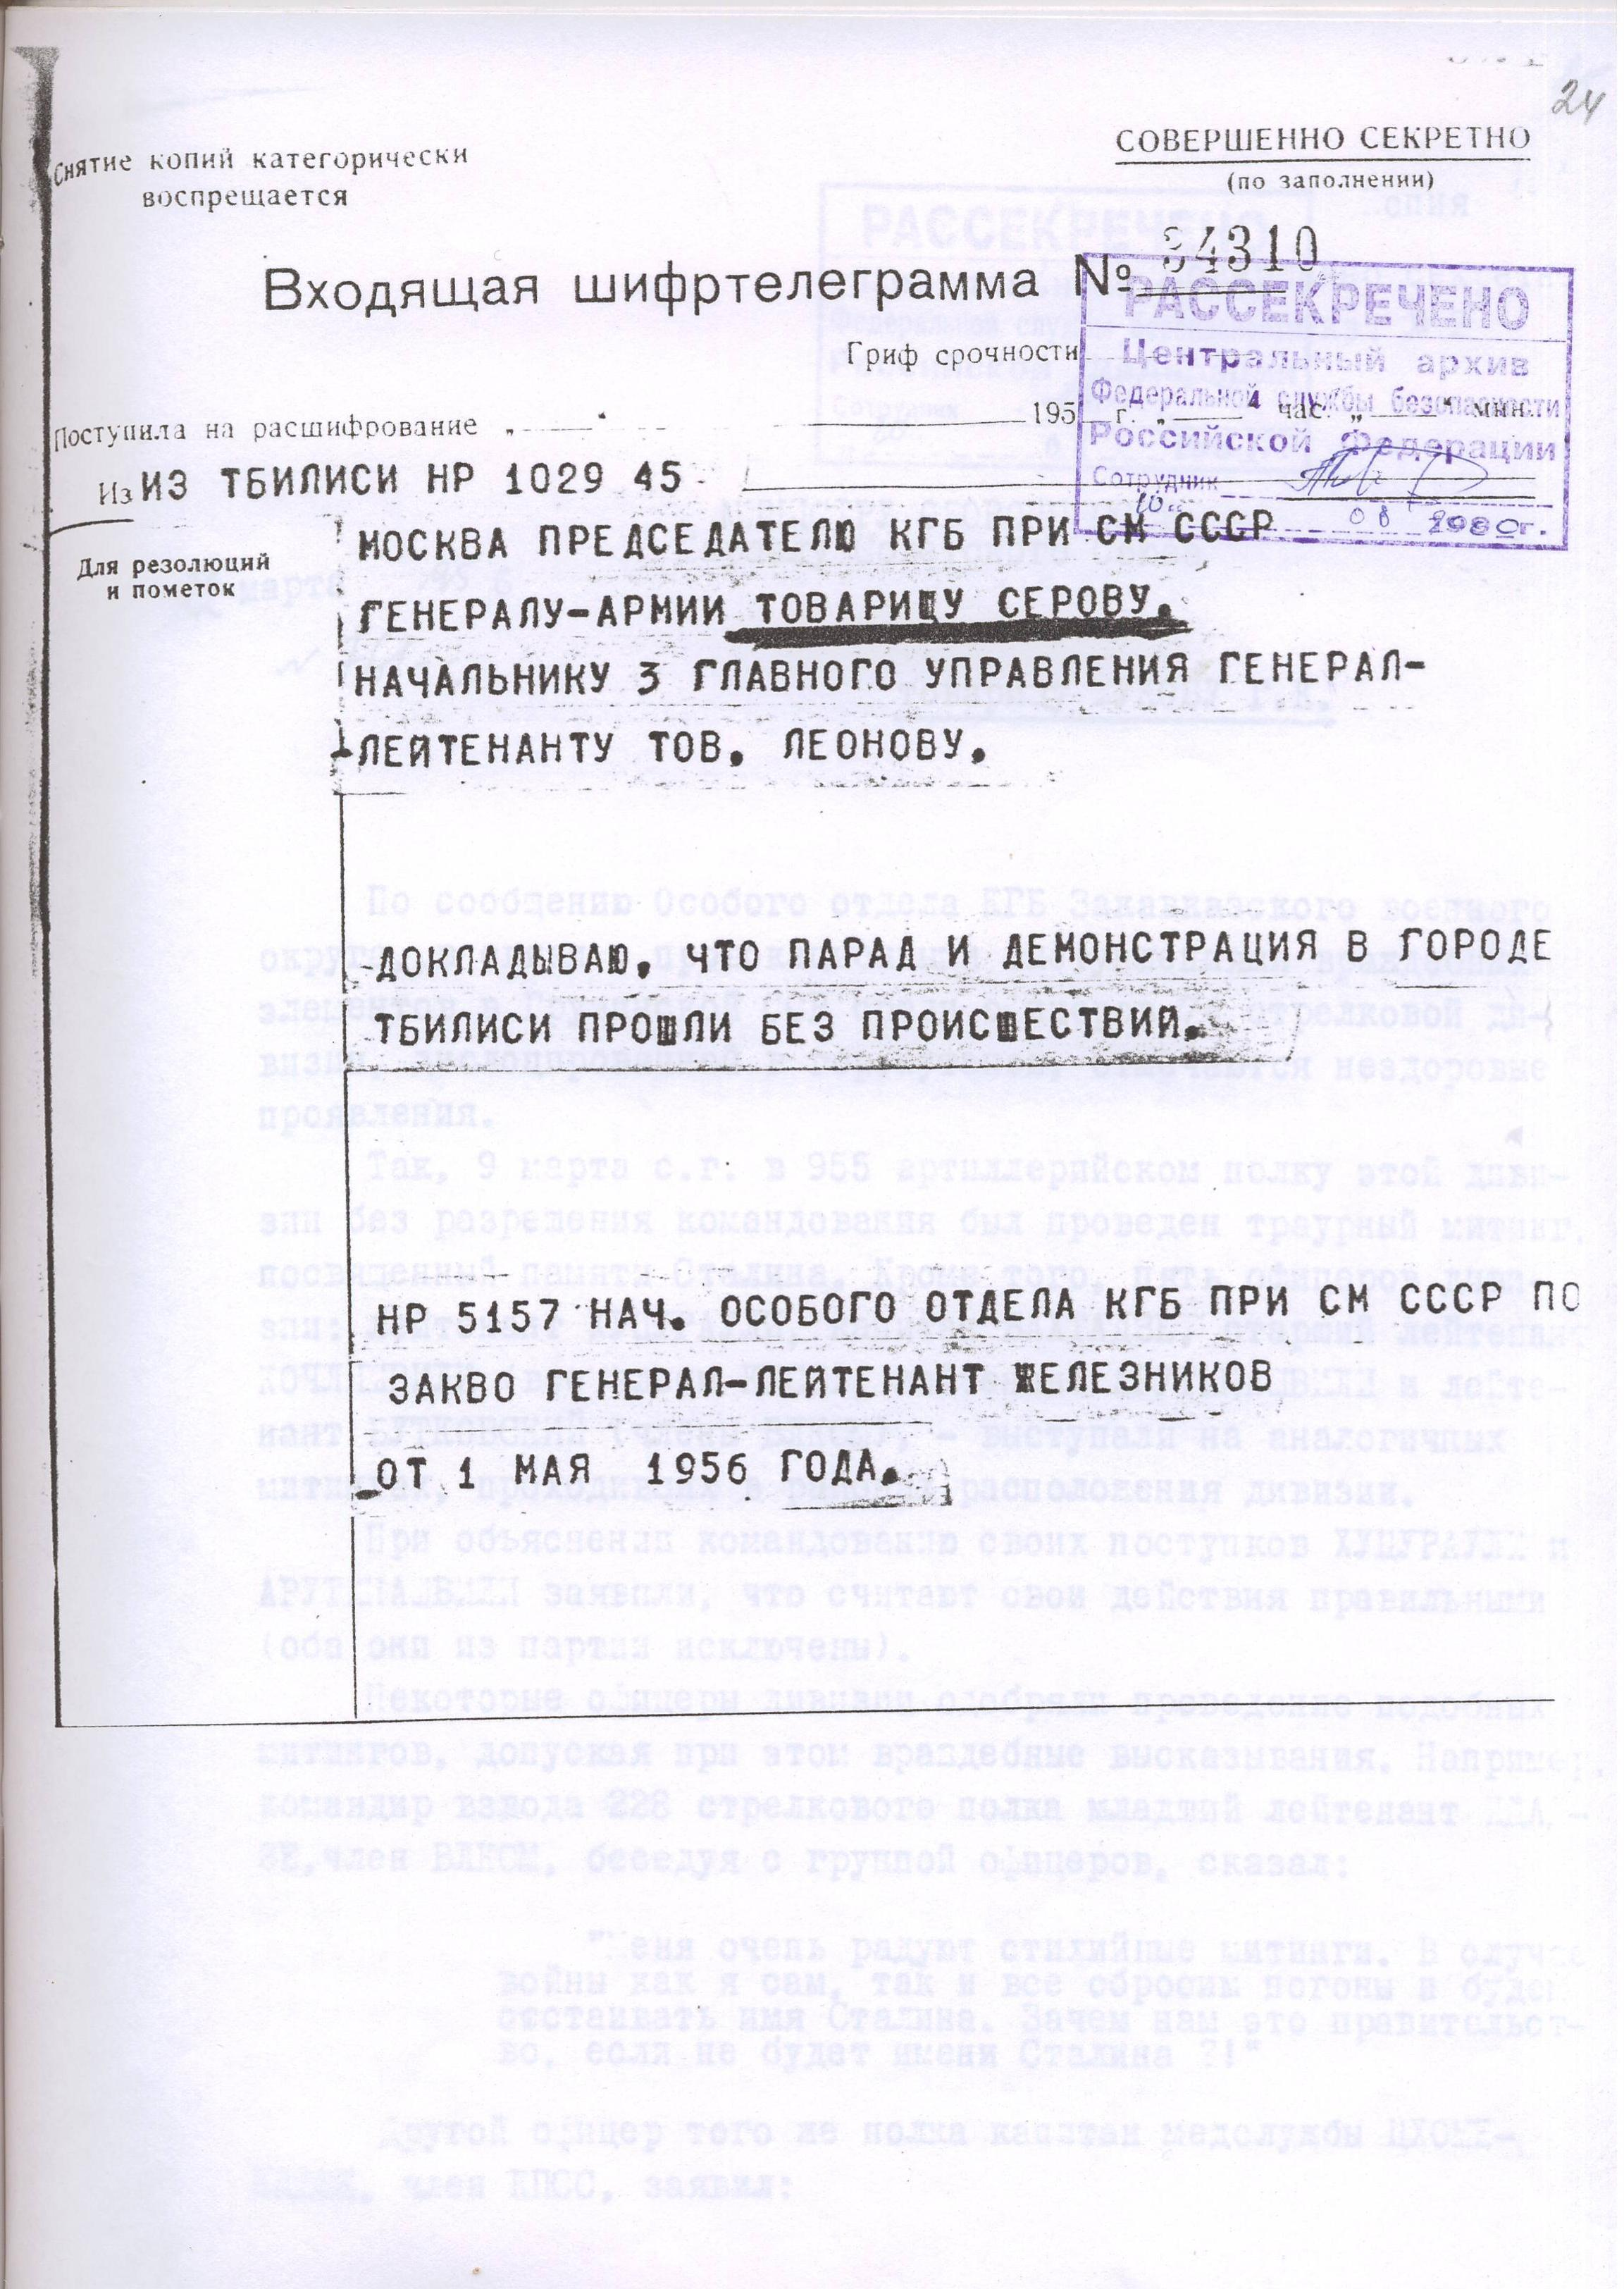 Входящие шифрованные телеграммы, рассекреченные ФСБ Российской Федерации, о событиях 5-9 марта 1956 г. Шифртелеграмма № 34310 от 1 мая 1956 г.